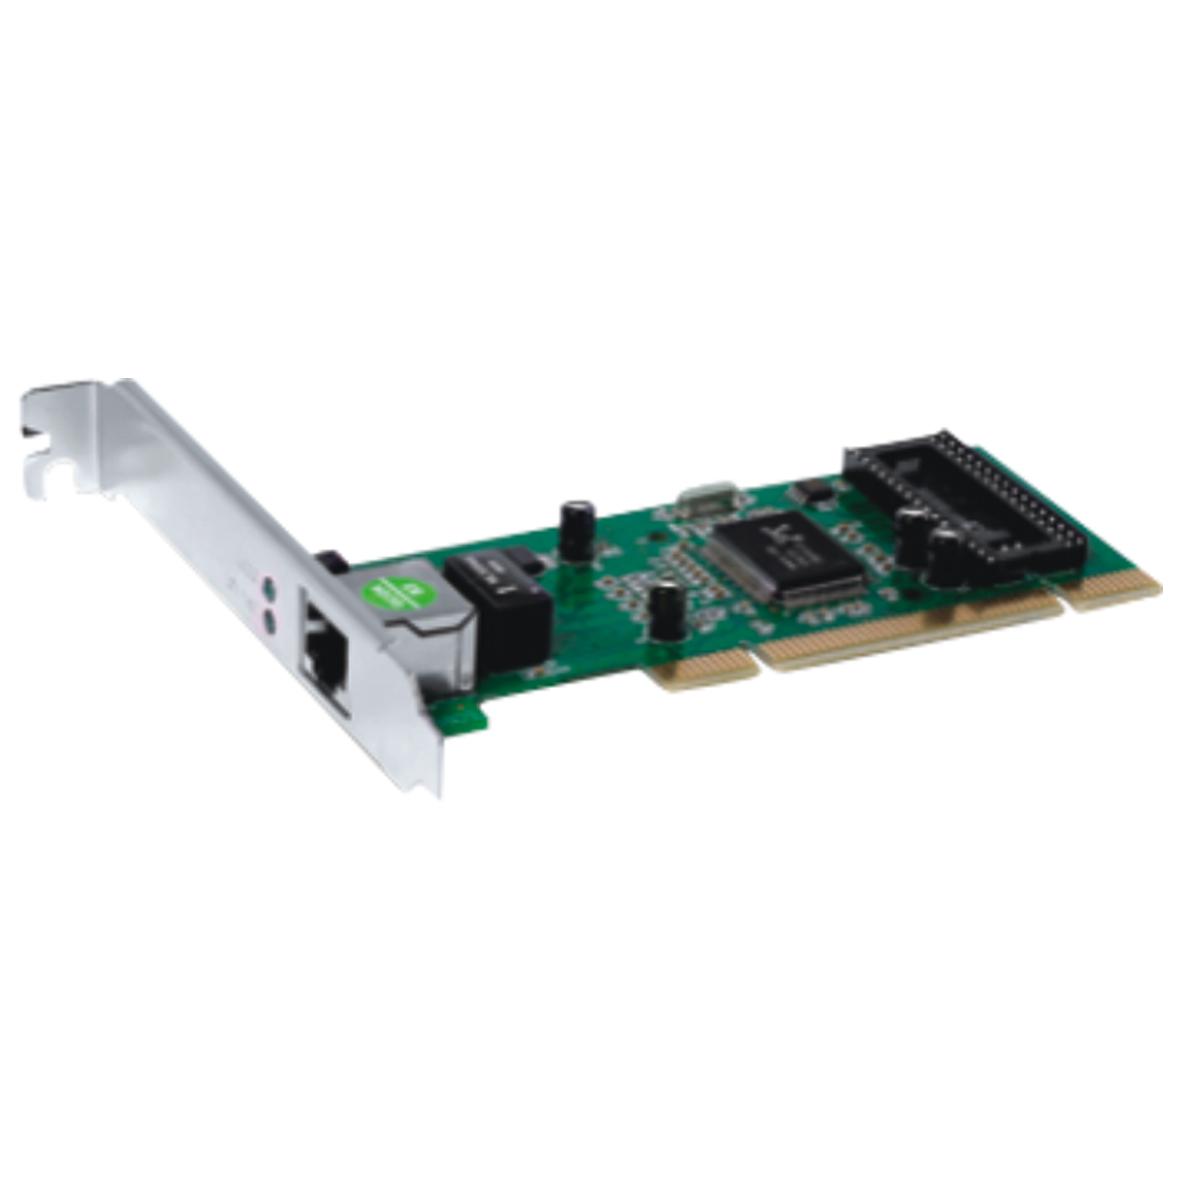 NETIS AD-1102 PCI Network Adapter, Gigabit LAN